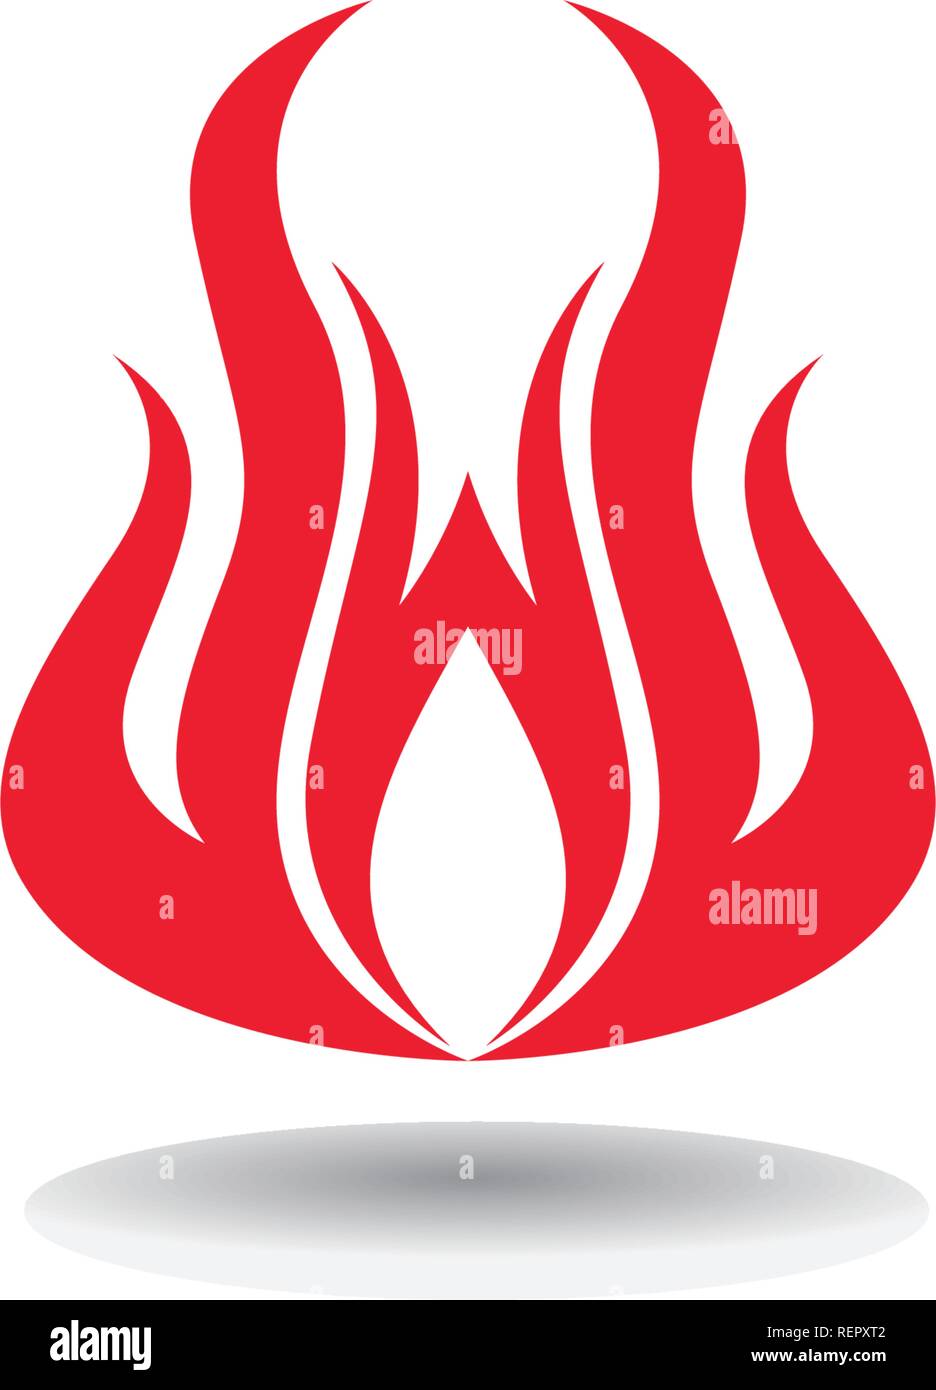 Fire Logo Template vector icon Oil, gas and energy logo concept Stock Vector